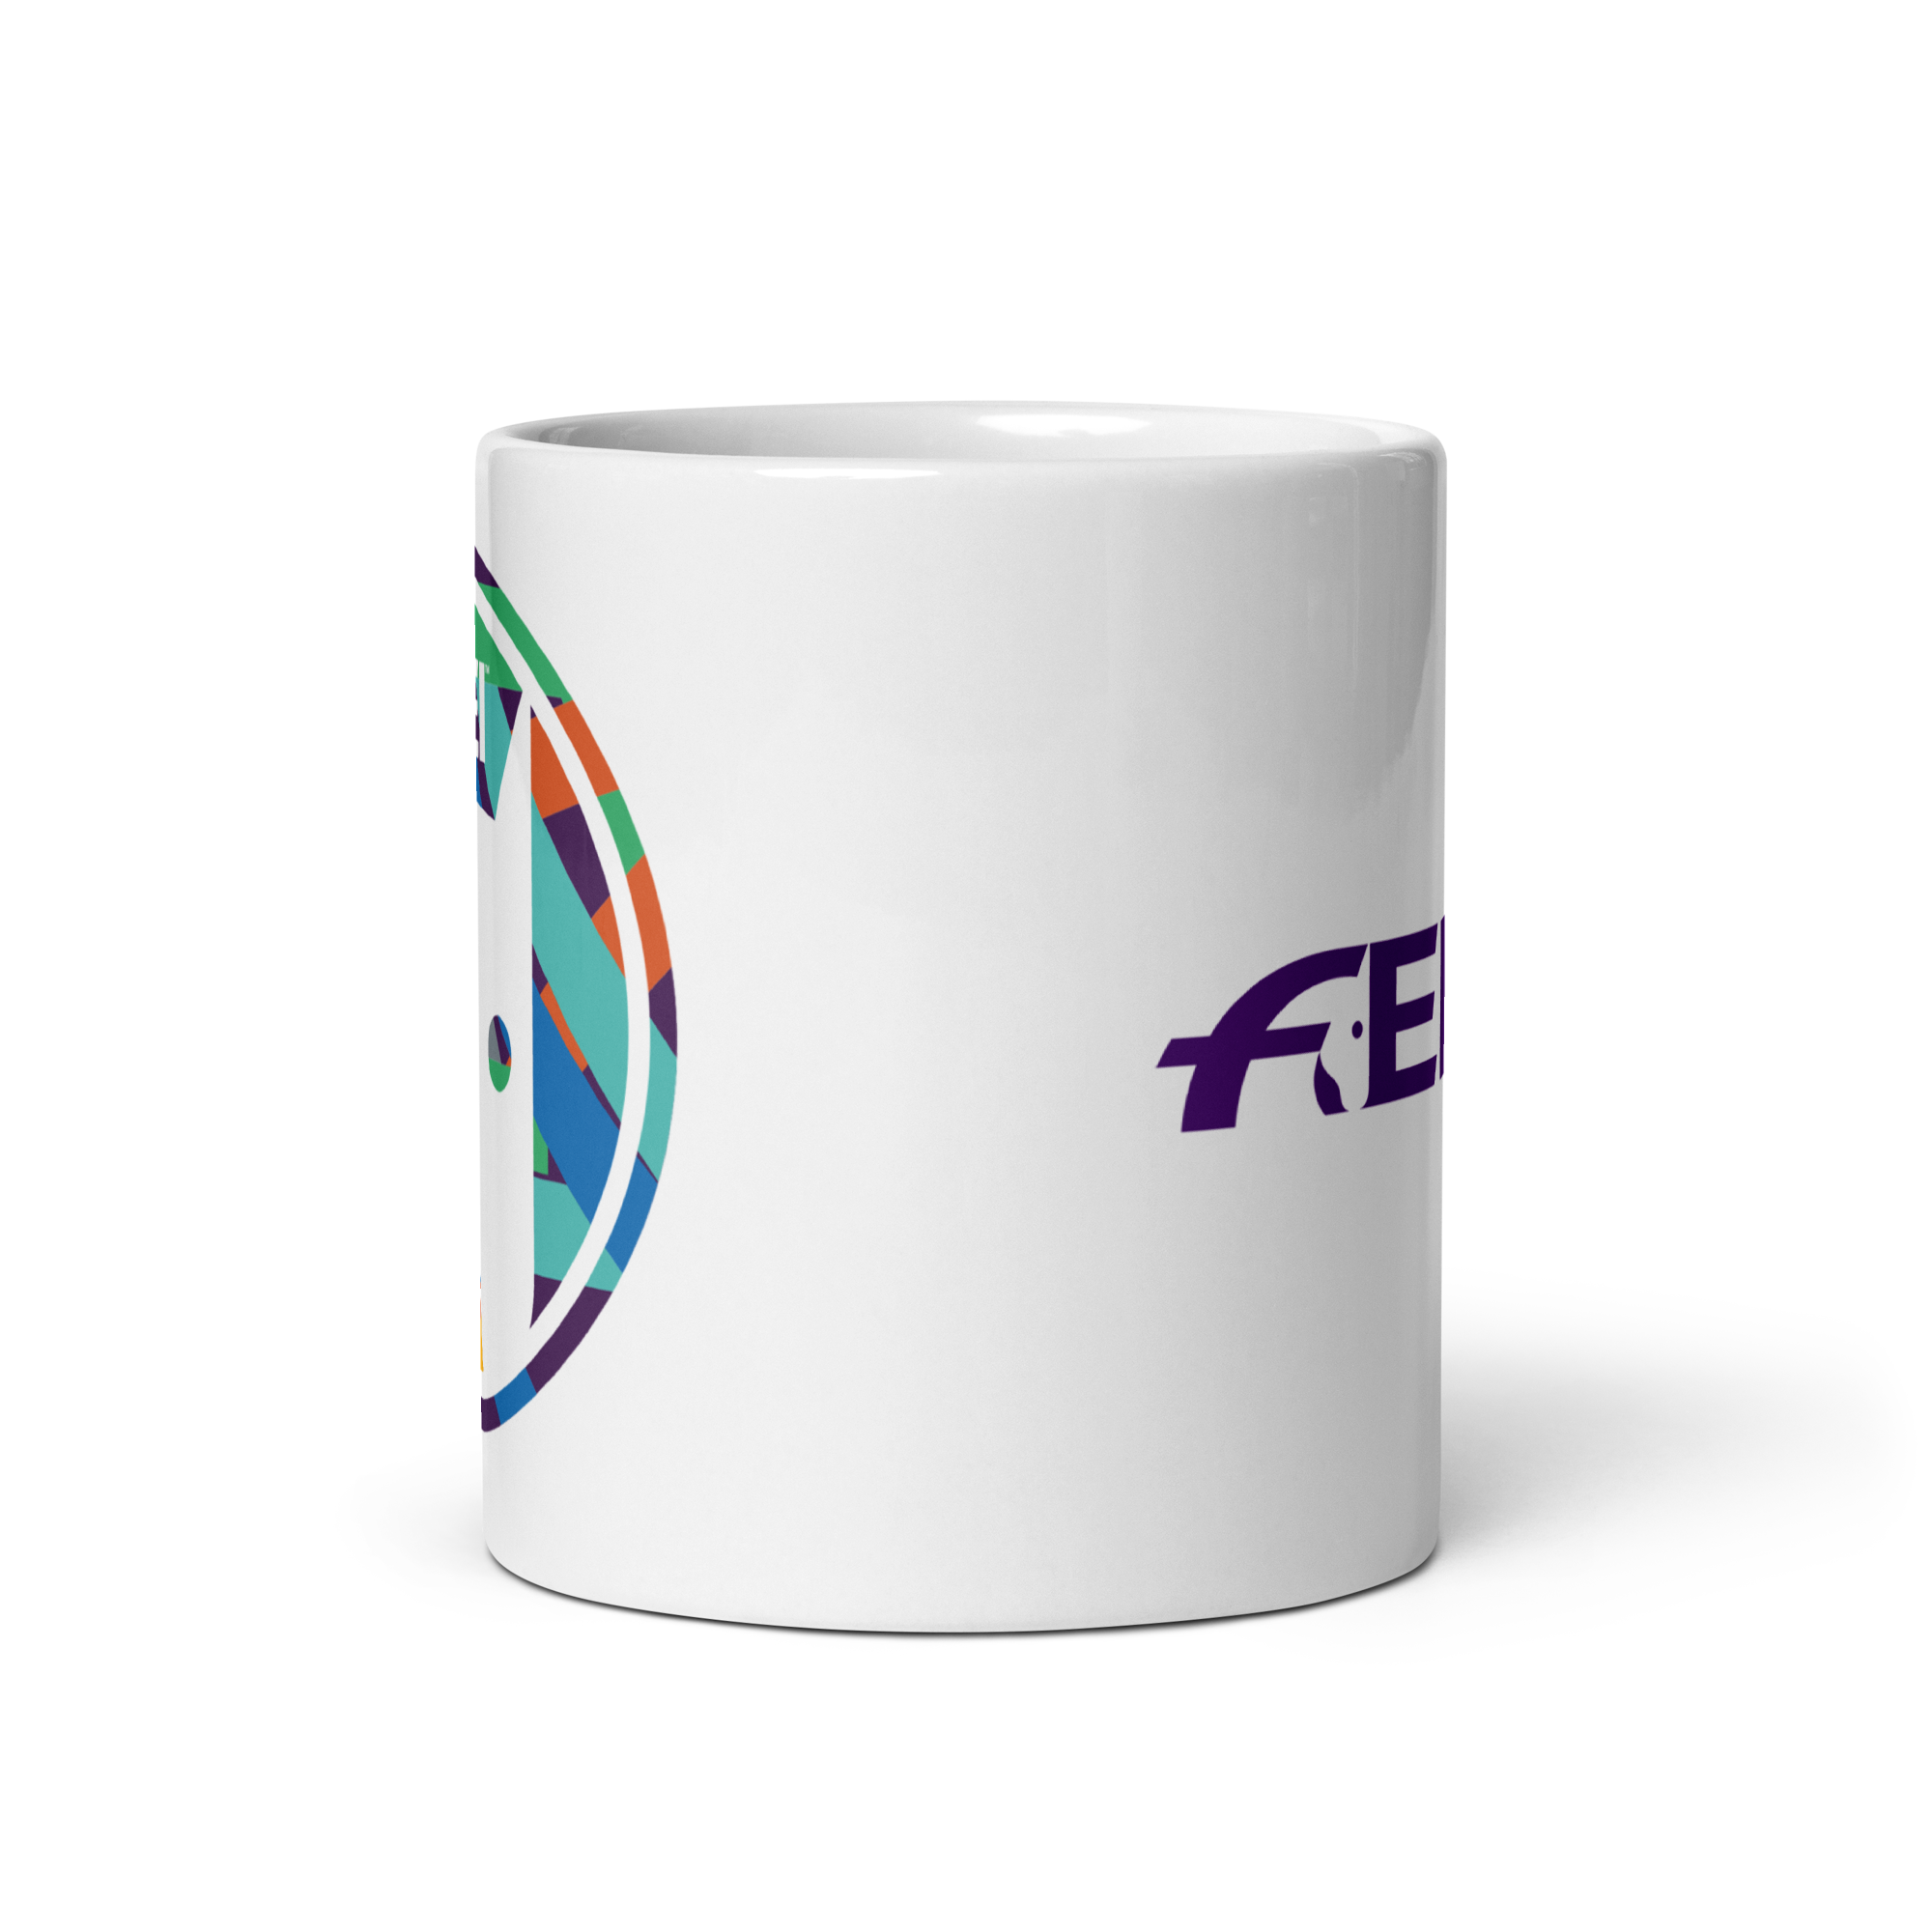 FEI Roundel White Glossy Mug FEI Official Store